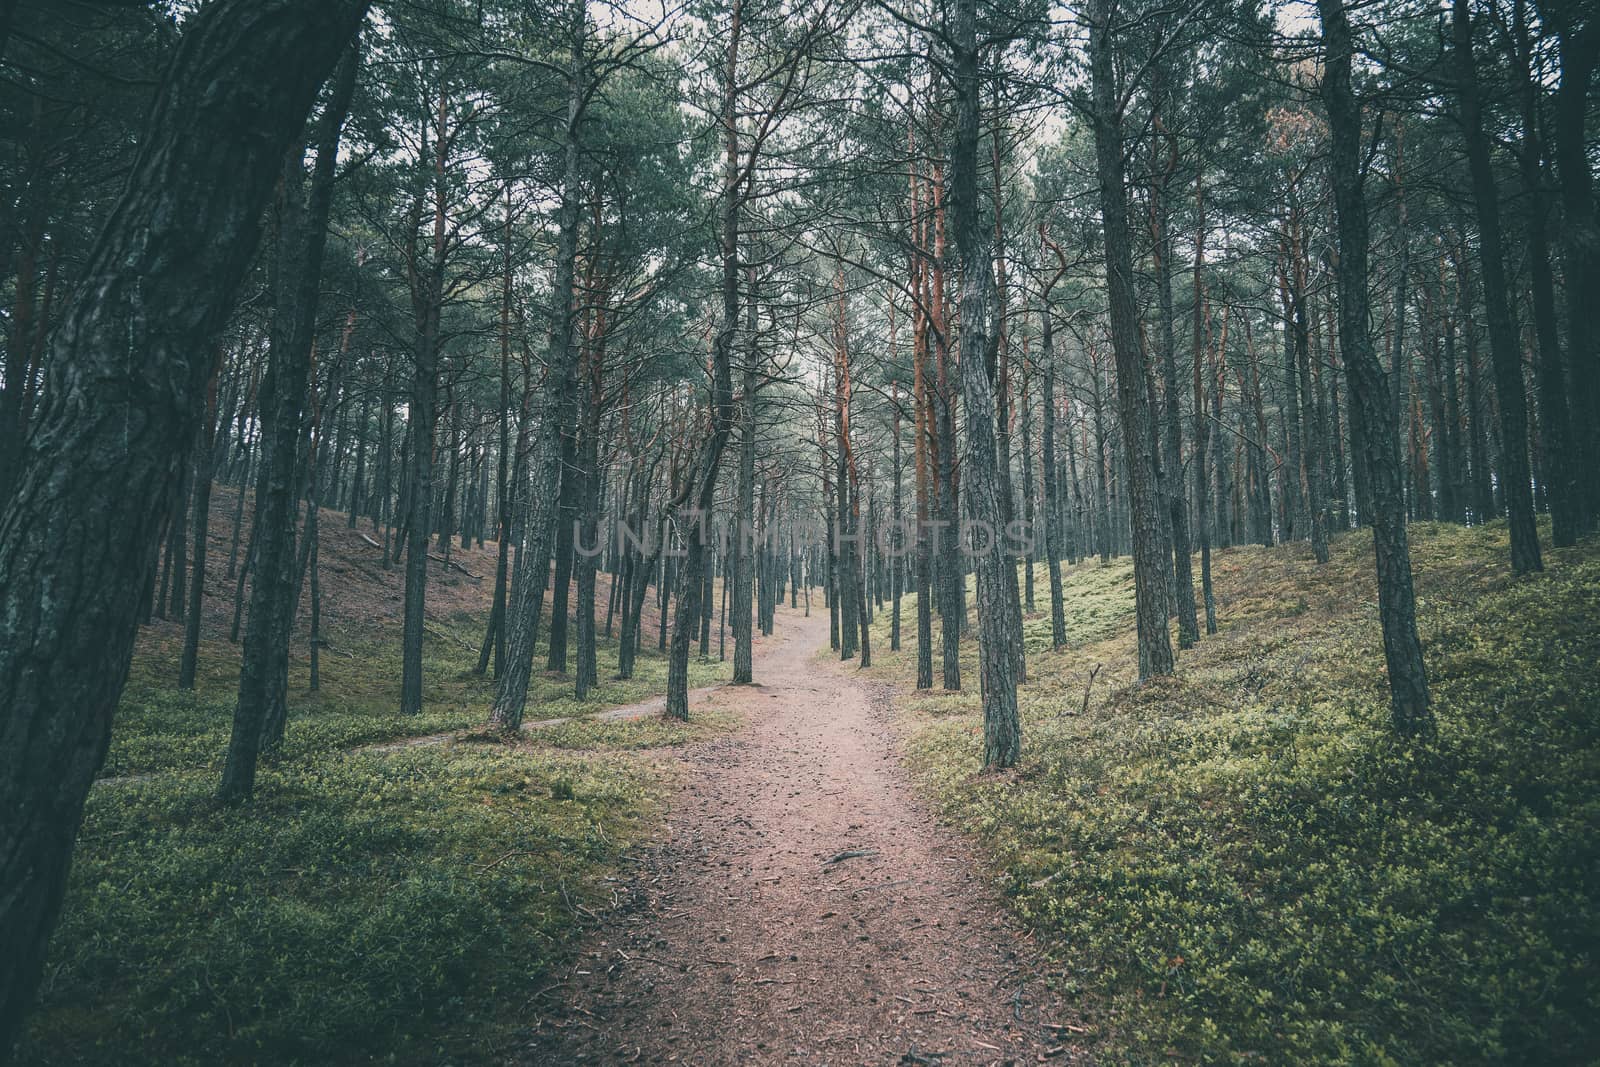  empty road through a dark pine forest by Lukrecja